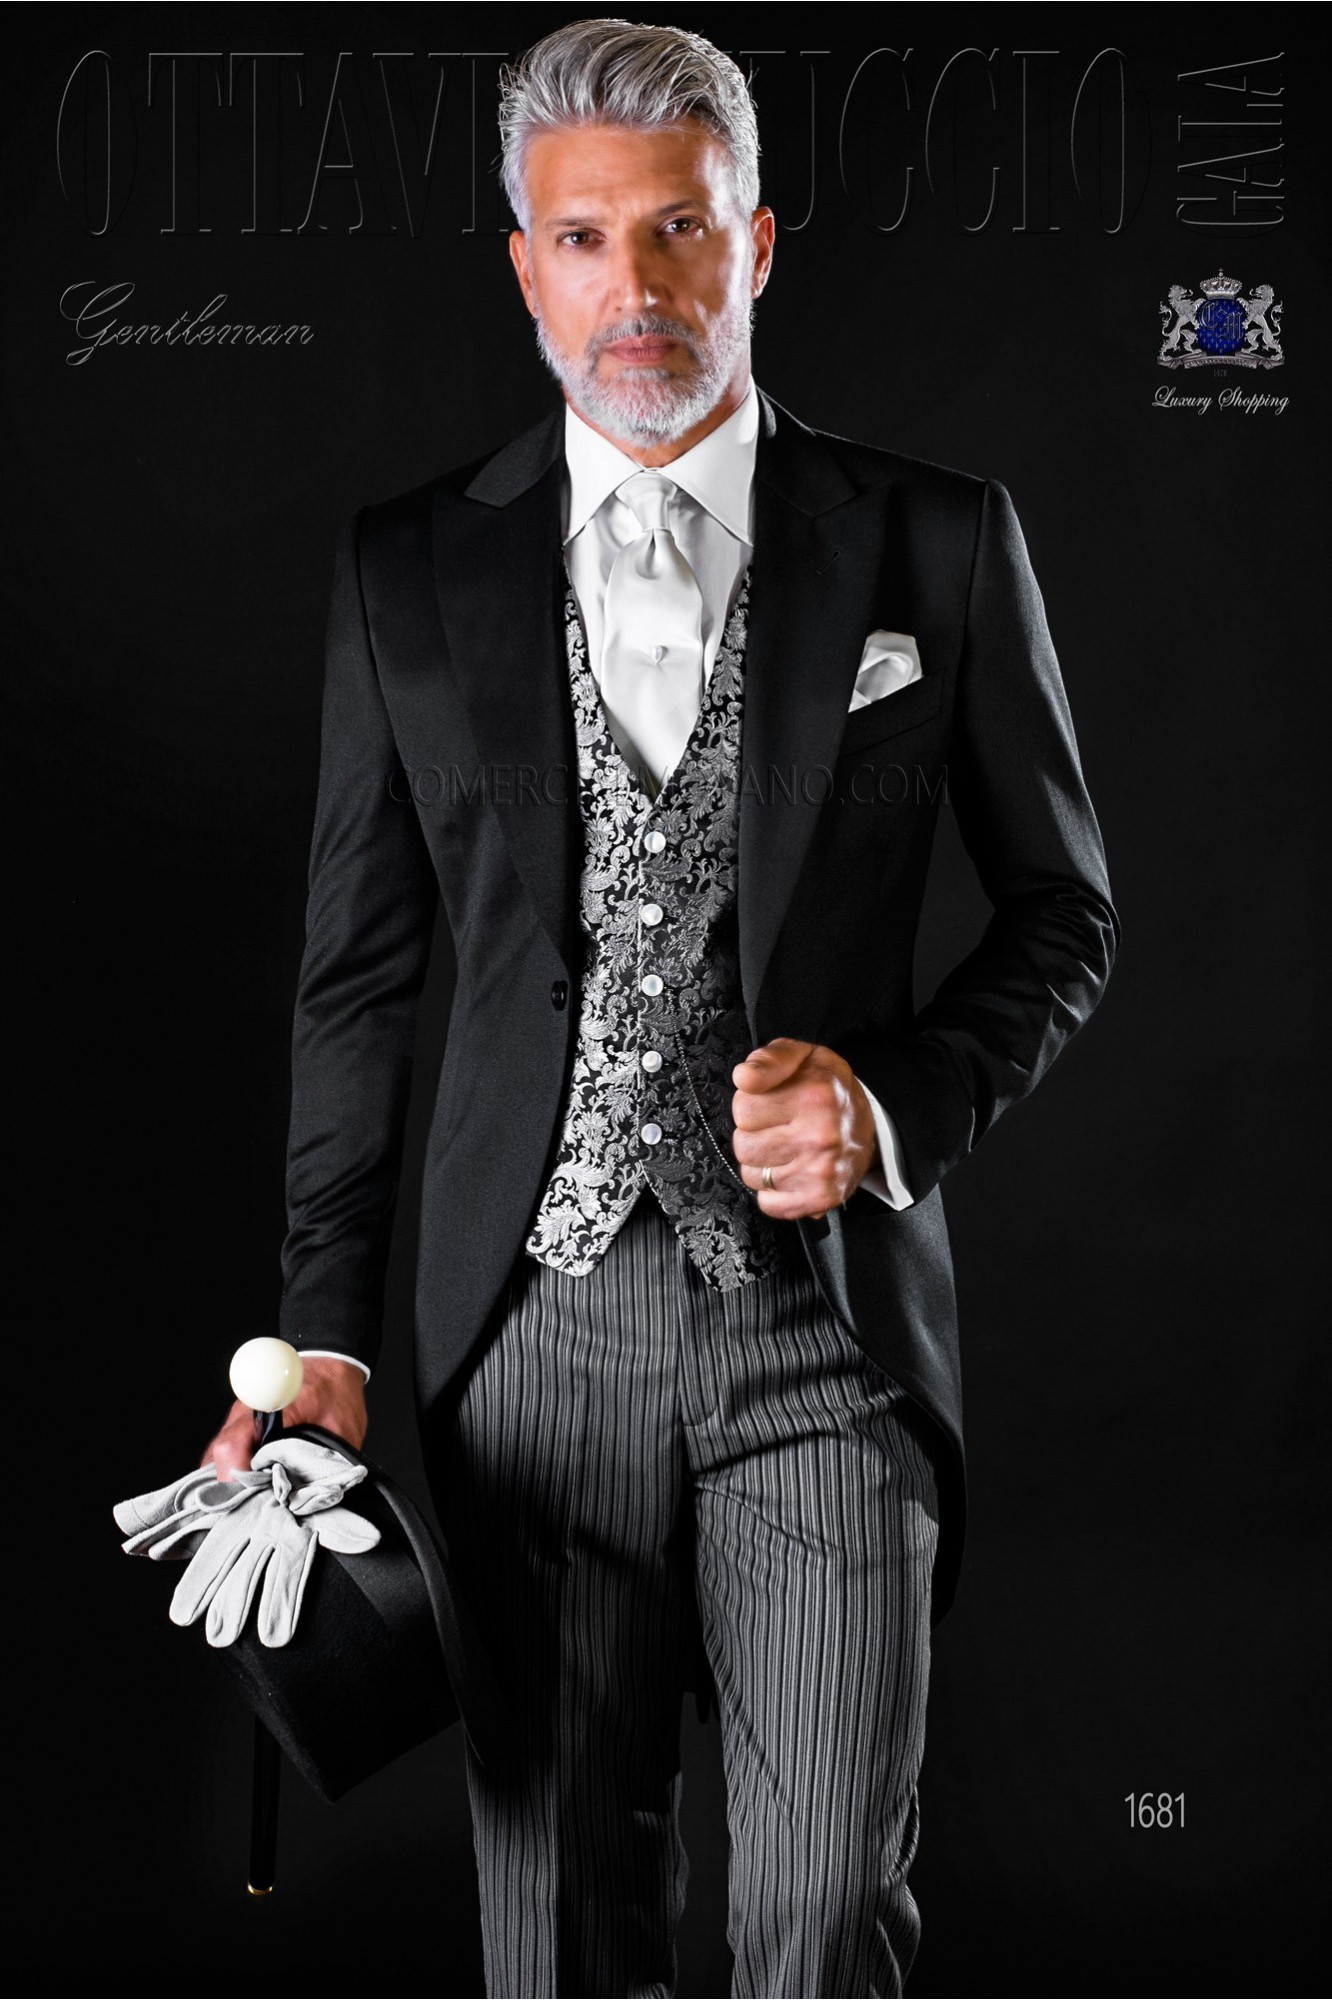 Chaqué clásico negro pura lana con pantalón de etiqueta modelo: 1681 Mario Moyano colección Gentleman